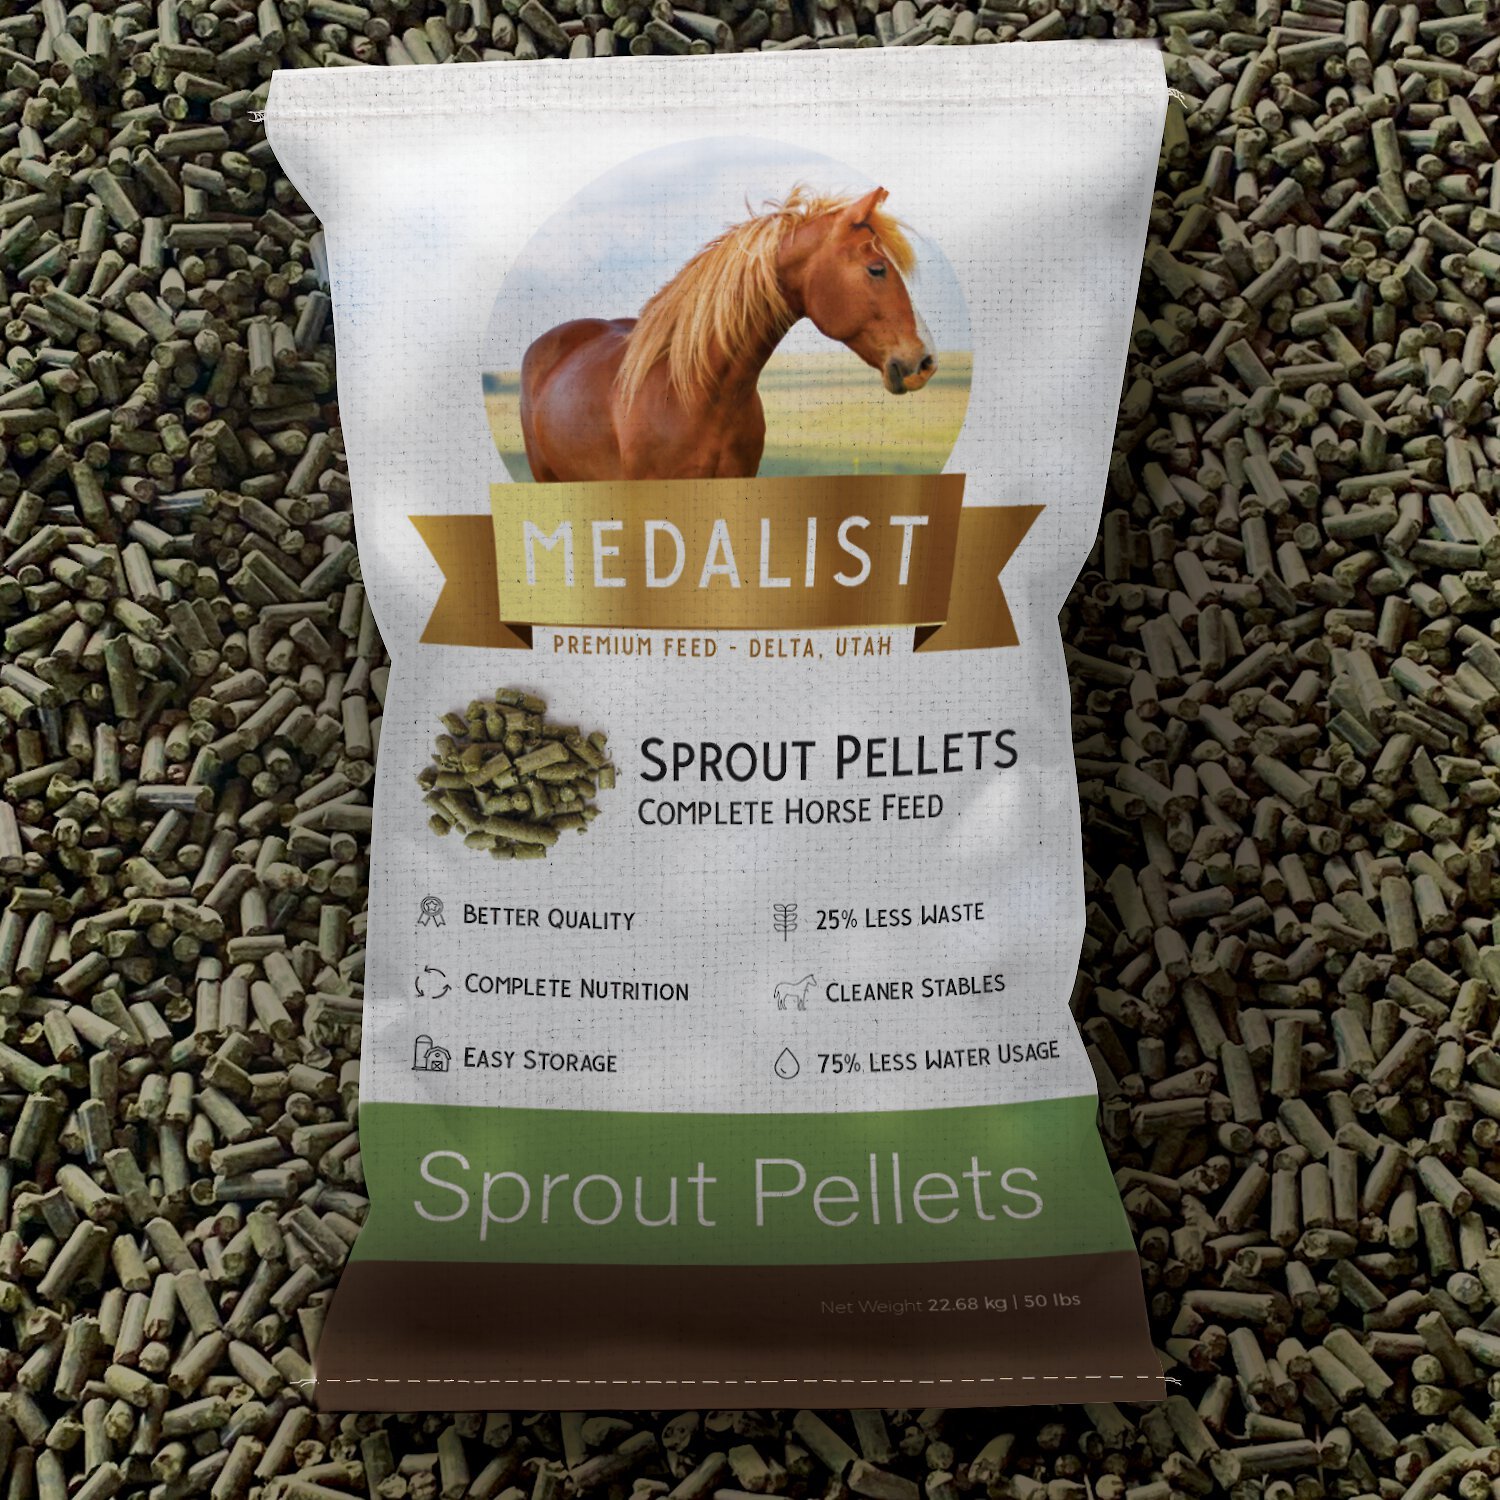 Milk pellets for horses